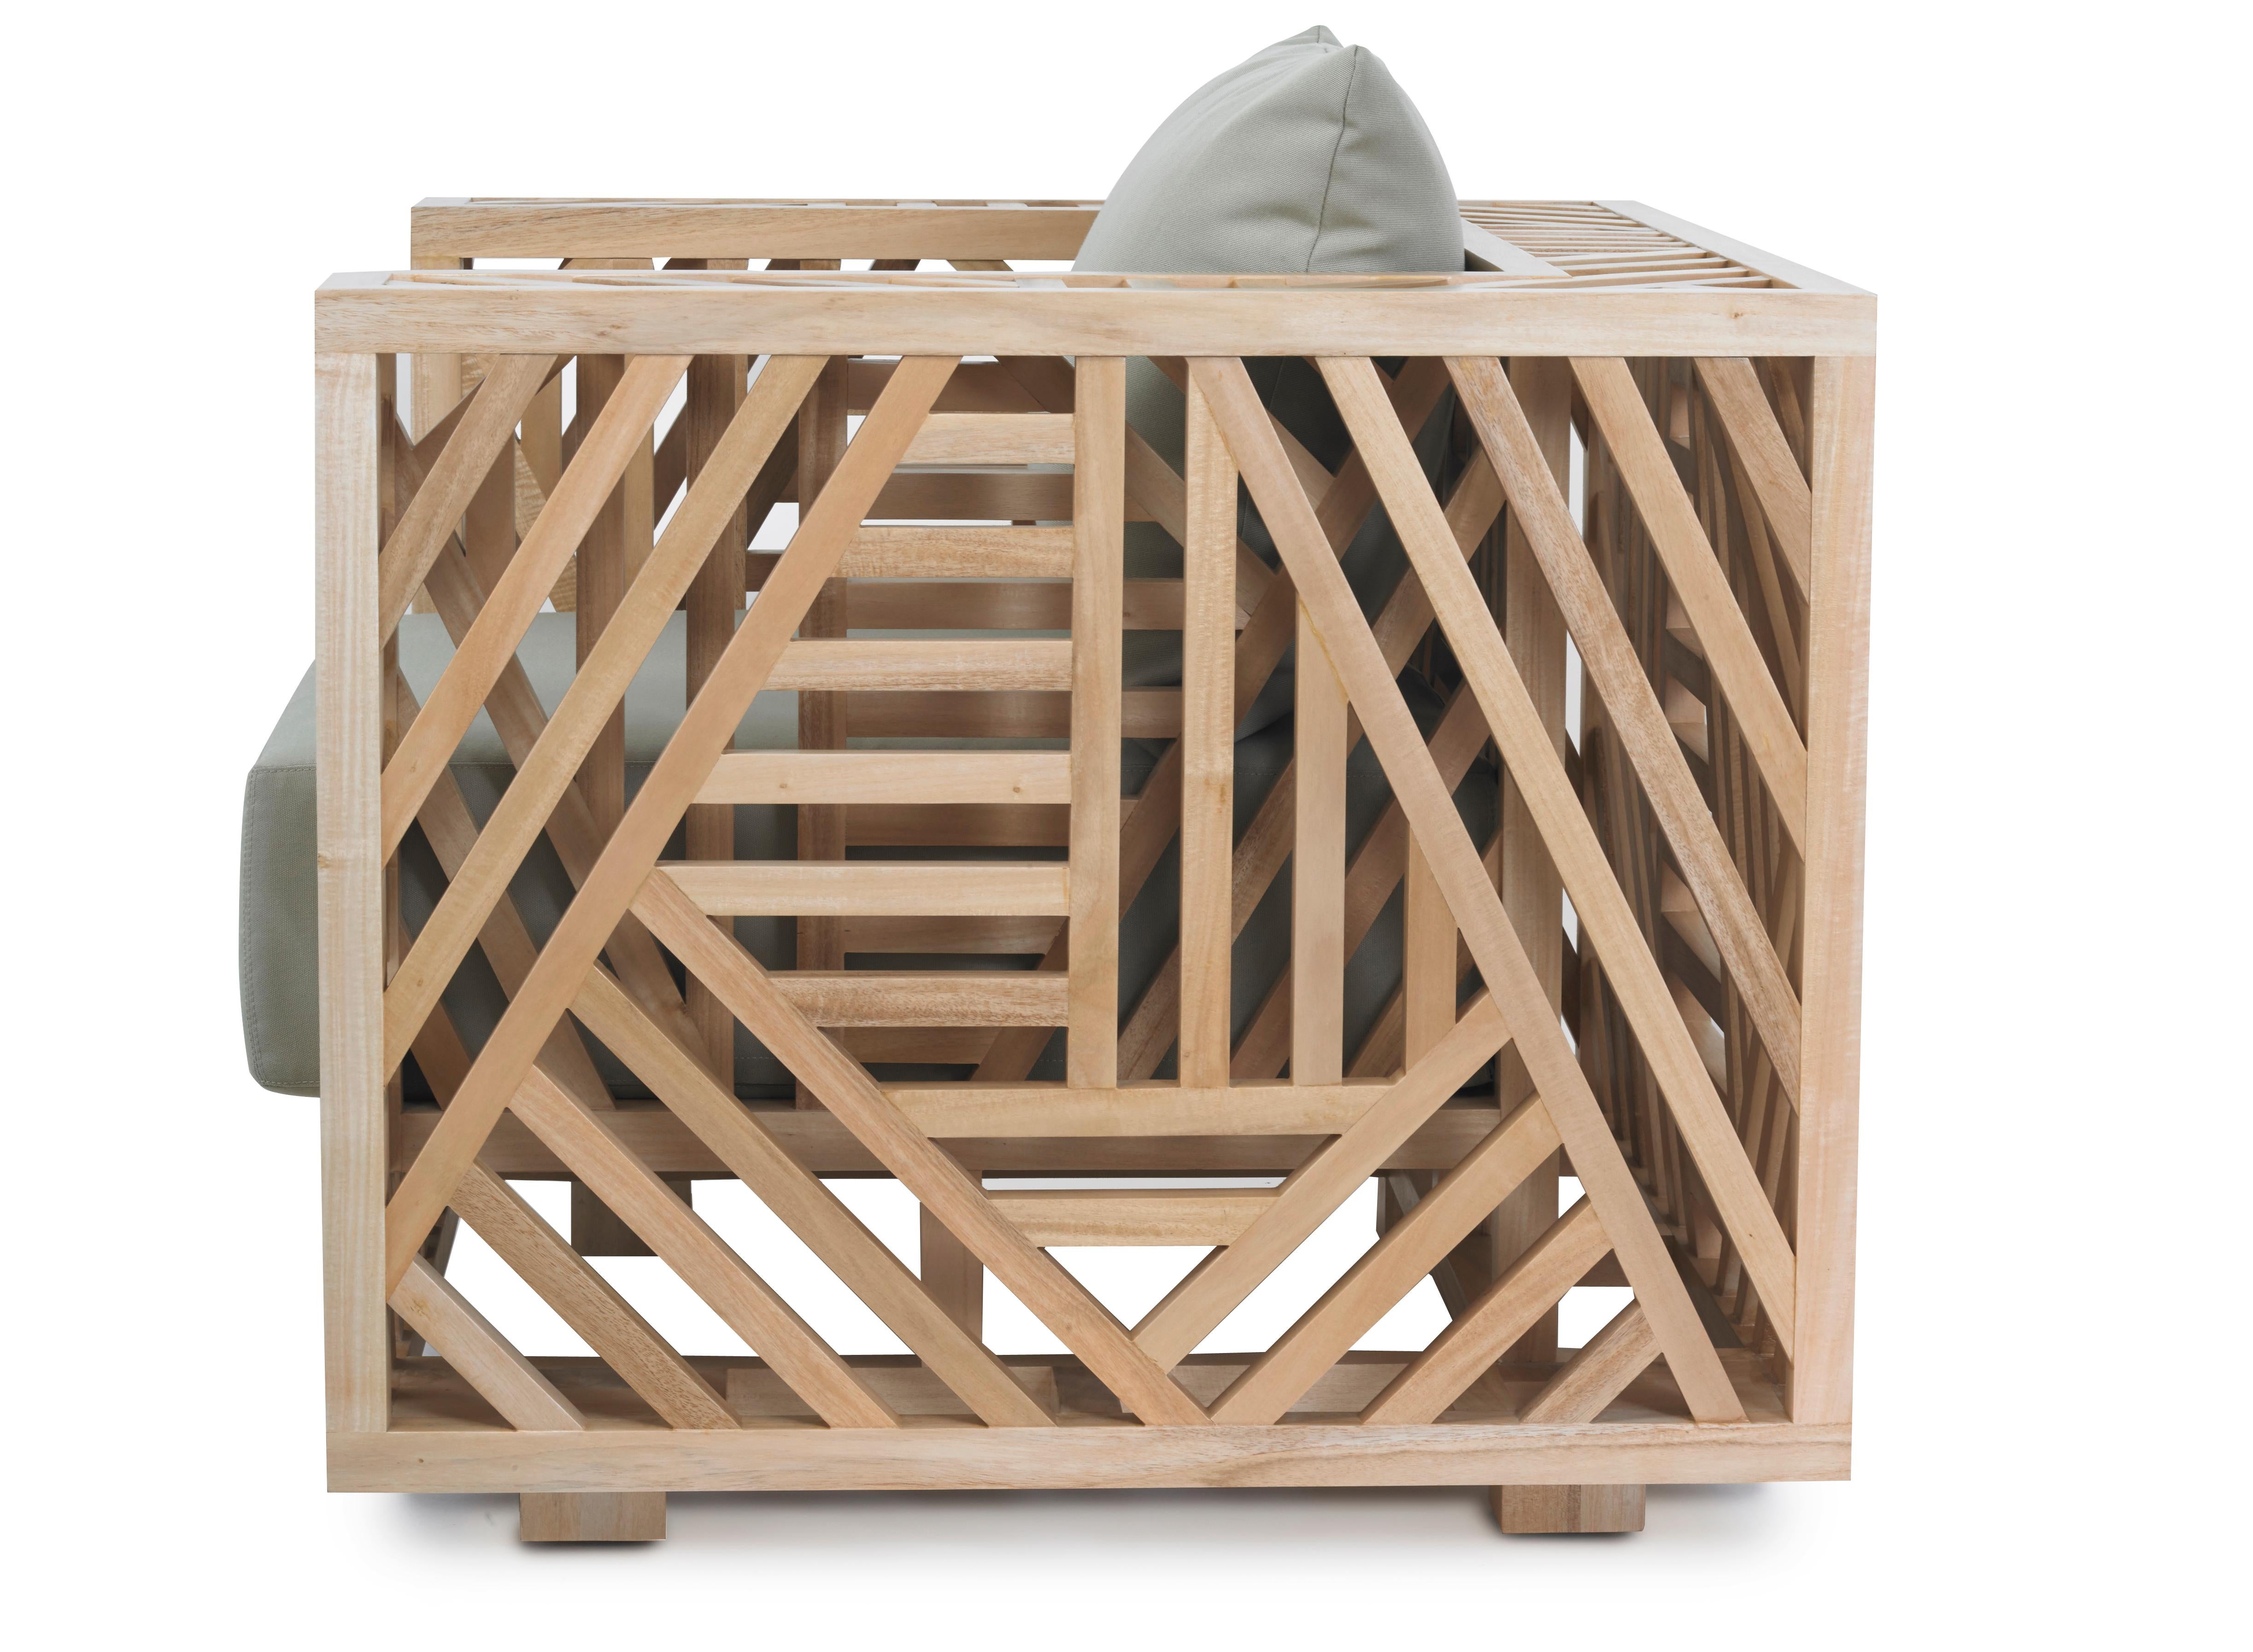 Der Ari Chair ist ein wahres Kunstwerk der Holzbearbeitung, das ein komplexes und doch elegantes geometrisches Design zeigt, das einfach umwerfend ist. Der aus unzähligen Holzstücken gefertigte und mit einer seidigen Patina überzogene Stuhl ist